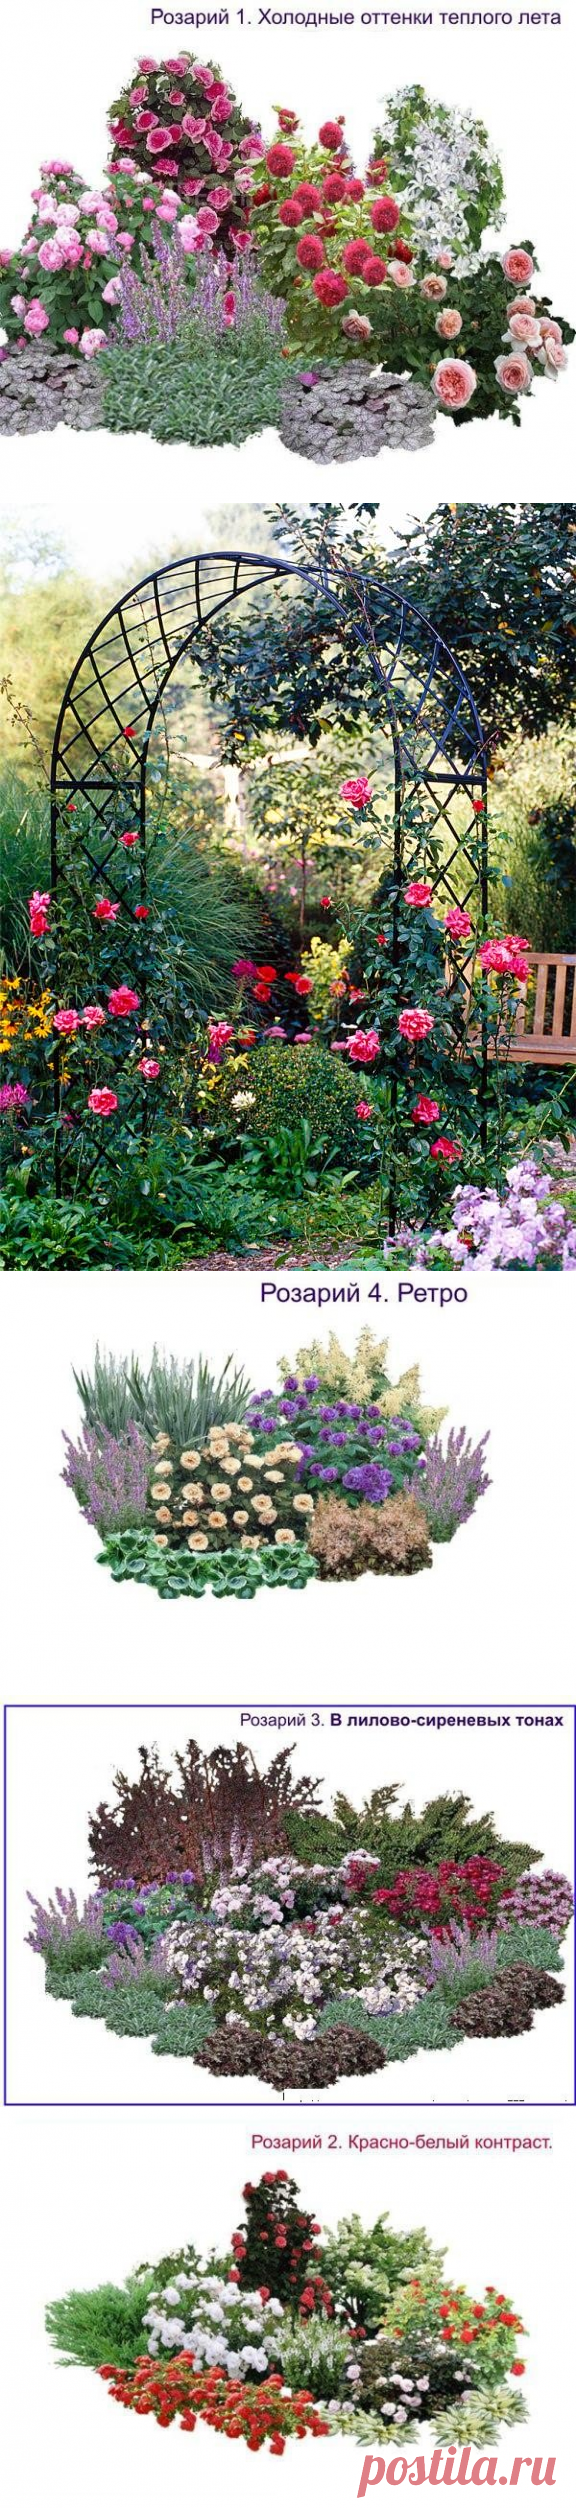 Создание розария в саду своими руками. выбор места на даче и сорта роз, подготовка участка. фото дизайна, видео